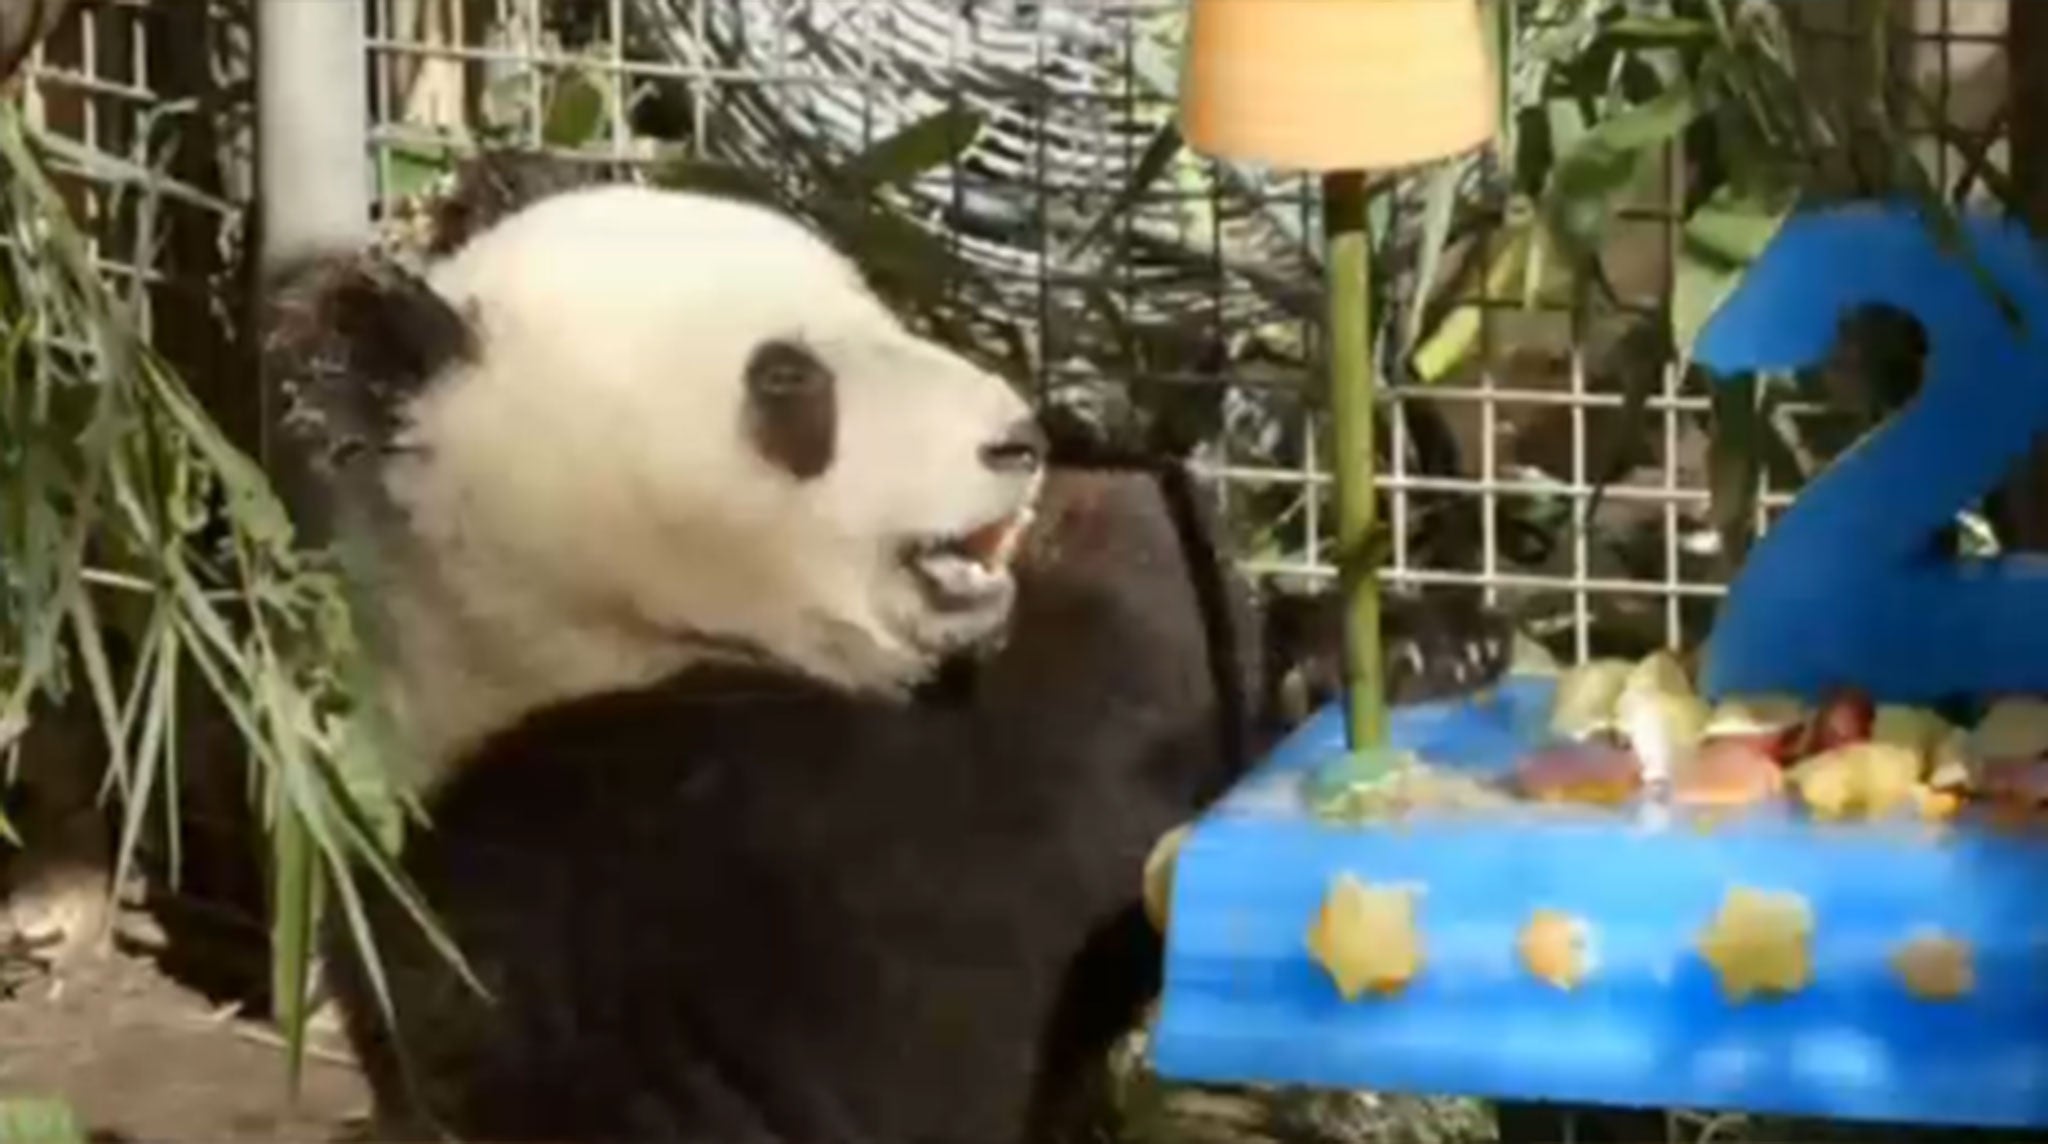 Xiao Liwu enjoys his birthday cake